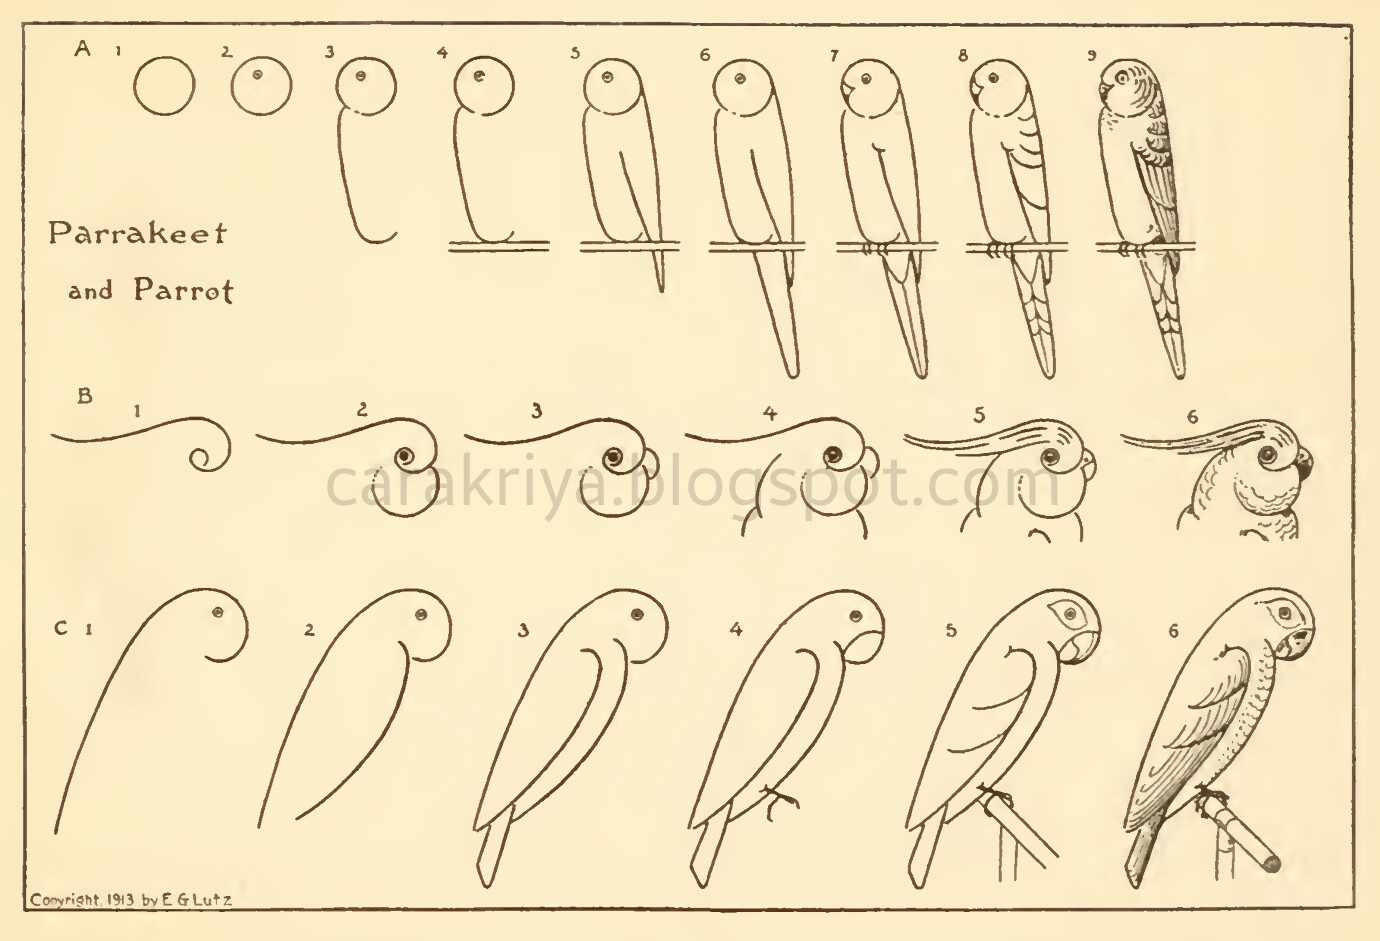 Cara Kriya Cara mudah menggambar burung